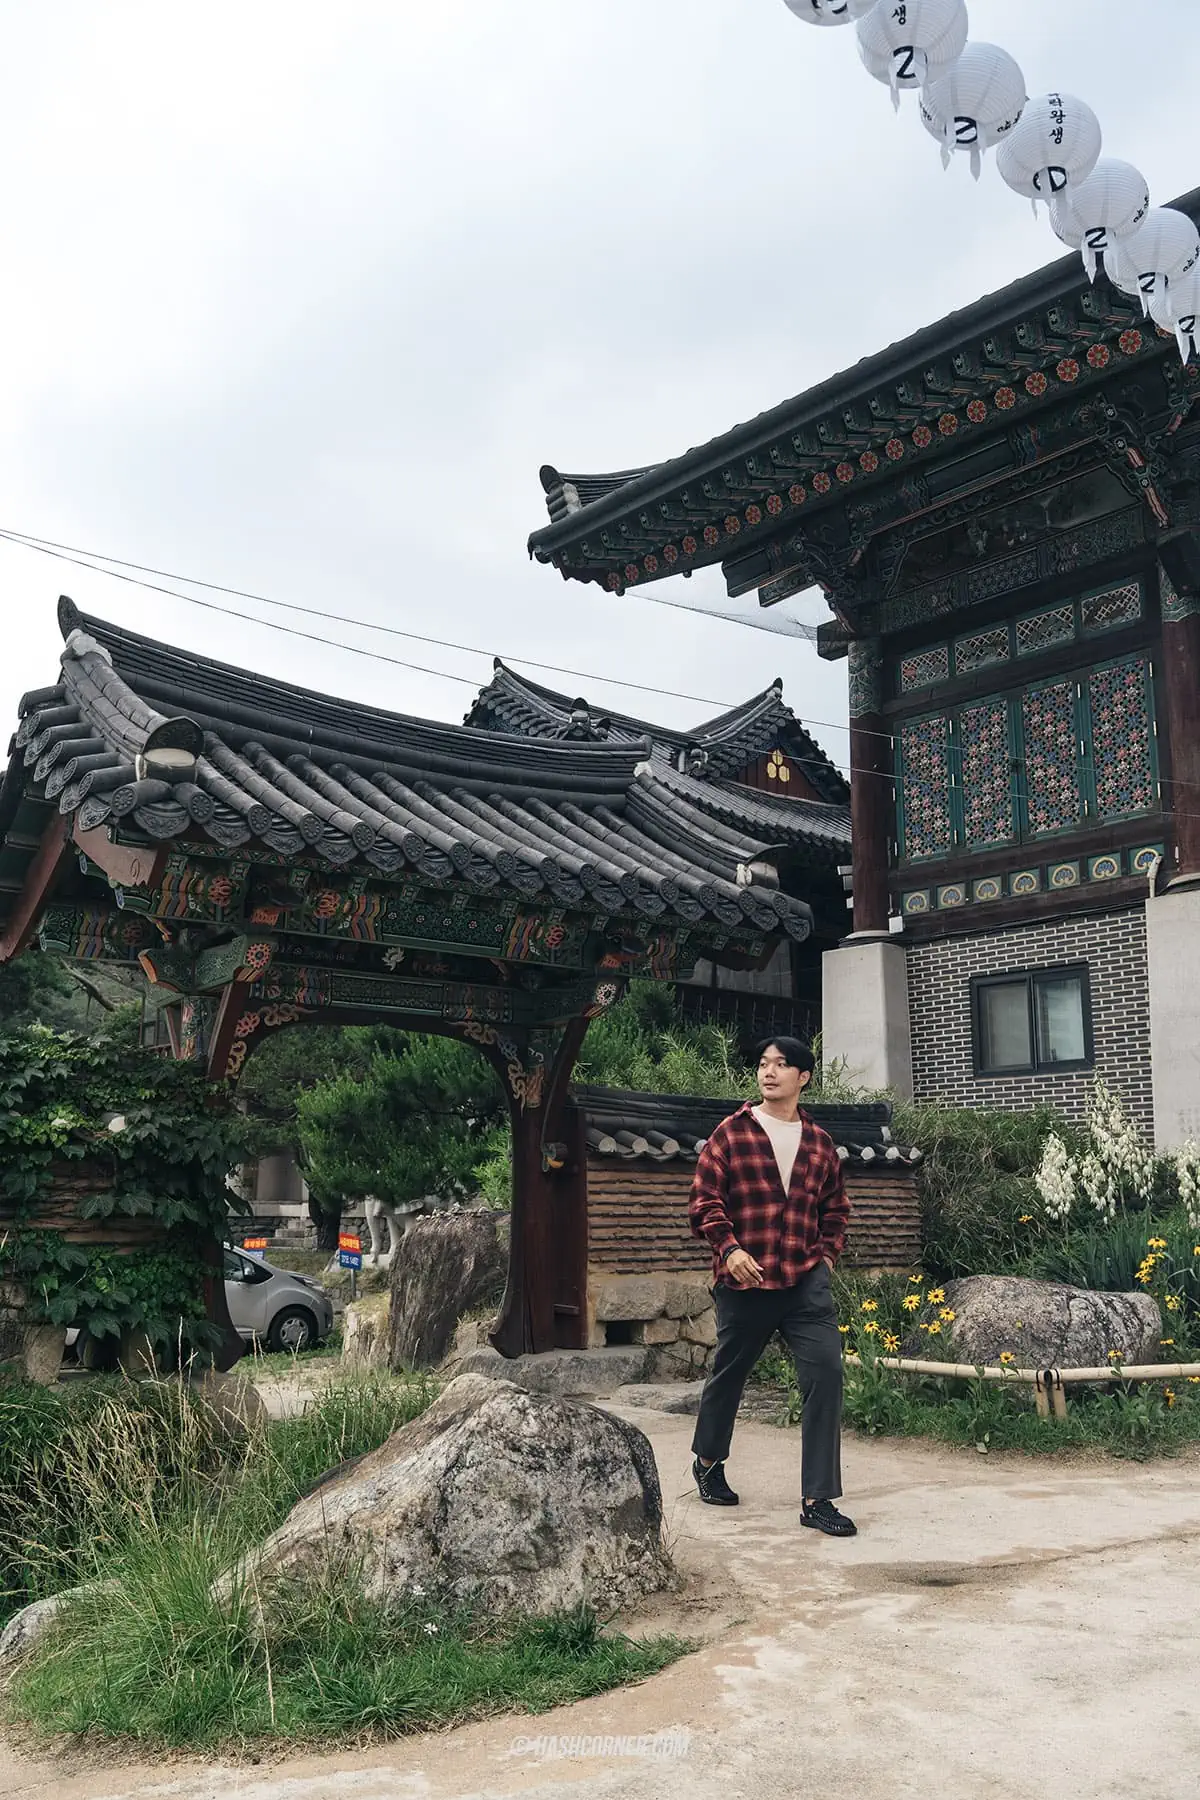 รีวิว วัดพงอึนซา (Bongeunsa Temple) x โซล วัดพุทธอายุ 1,200 ปี